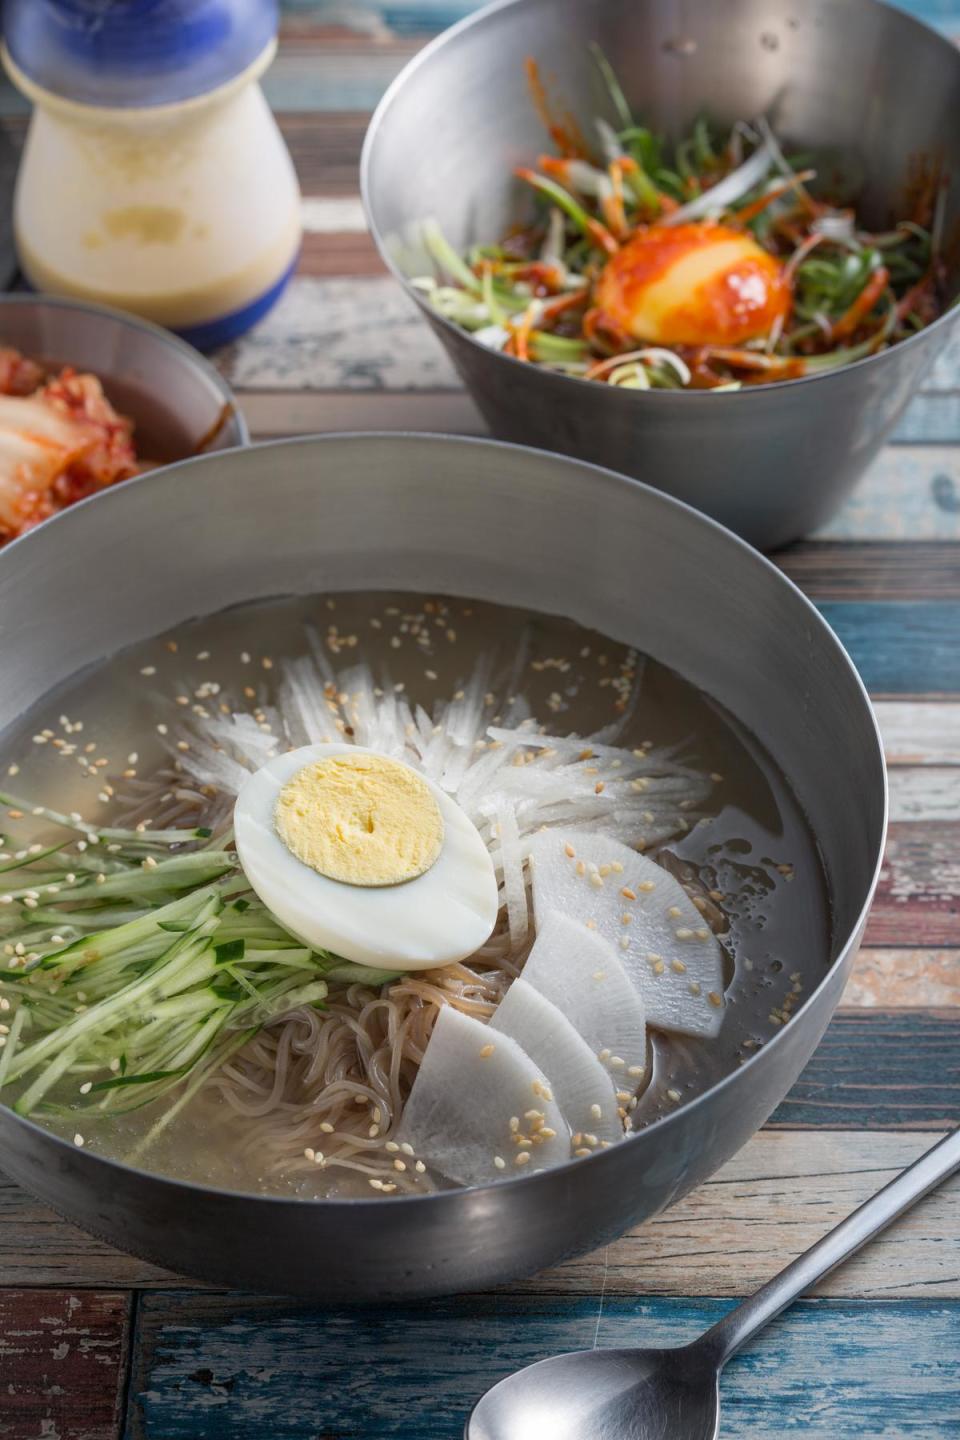 「韓式冷湯麵」的湯汁是用牛骨高湯和汽水調成，再用機器打成冰沙狀，冰涼爽口又酸溜開胃。（160元／碗）